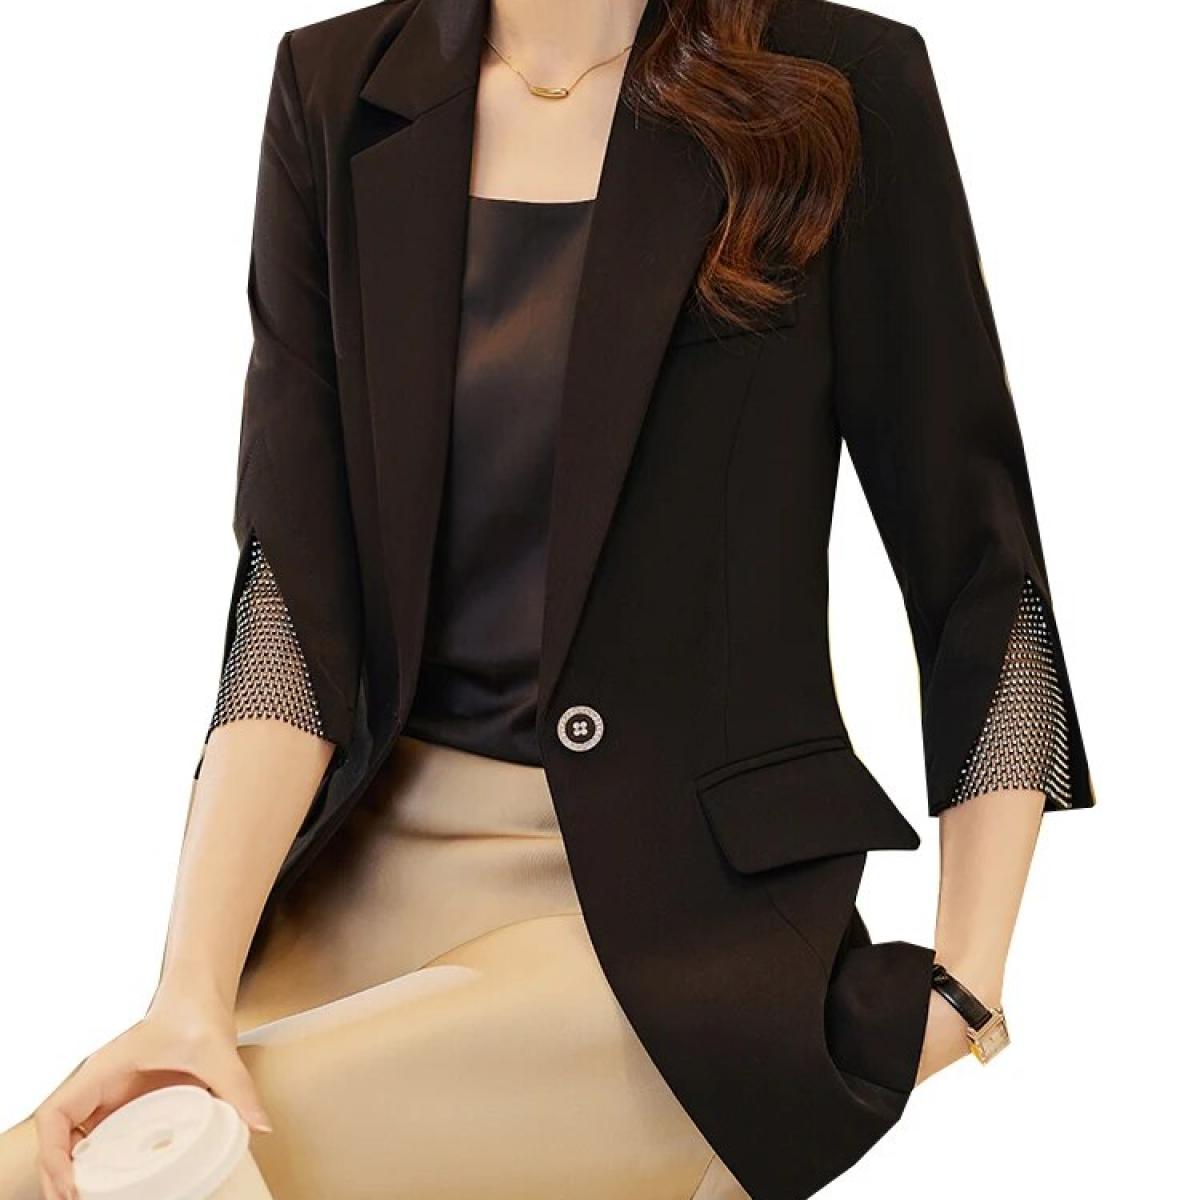 אופנה נשים בלייזר נשים נשים לבן שחור כפתור יחיד חצי שרוול ללבוש עבודה עסקית מעיל מעיל רשמי עבור ספרין